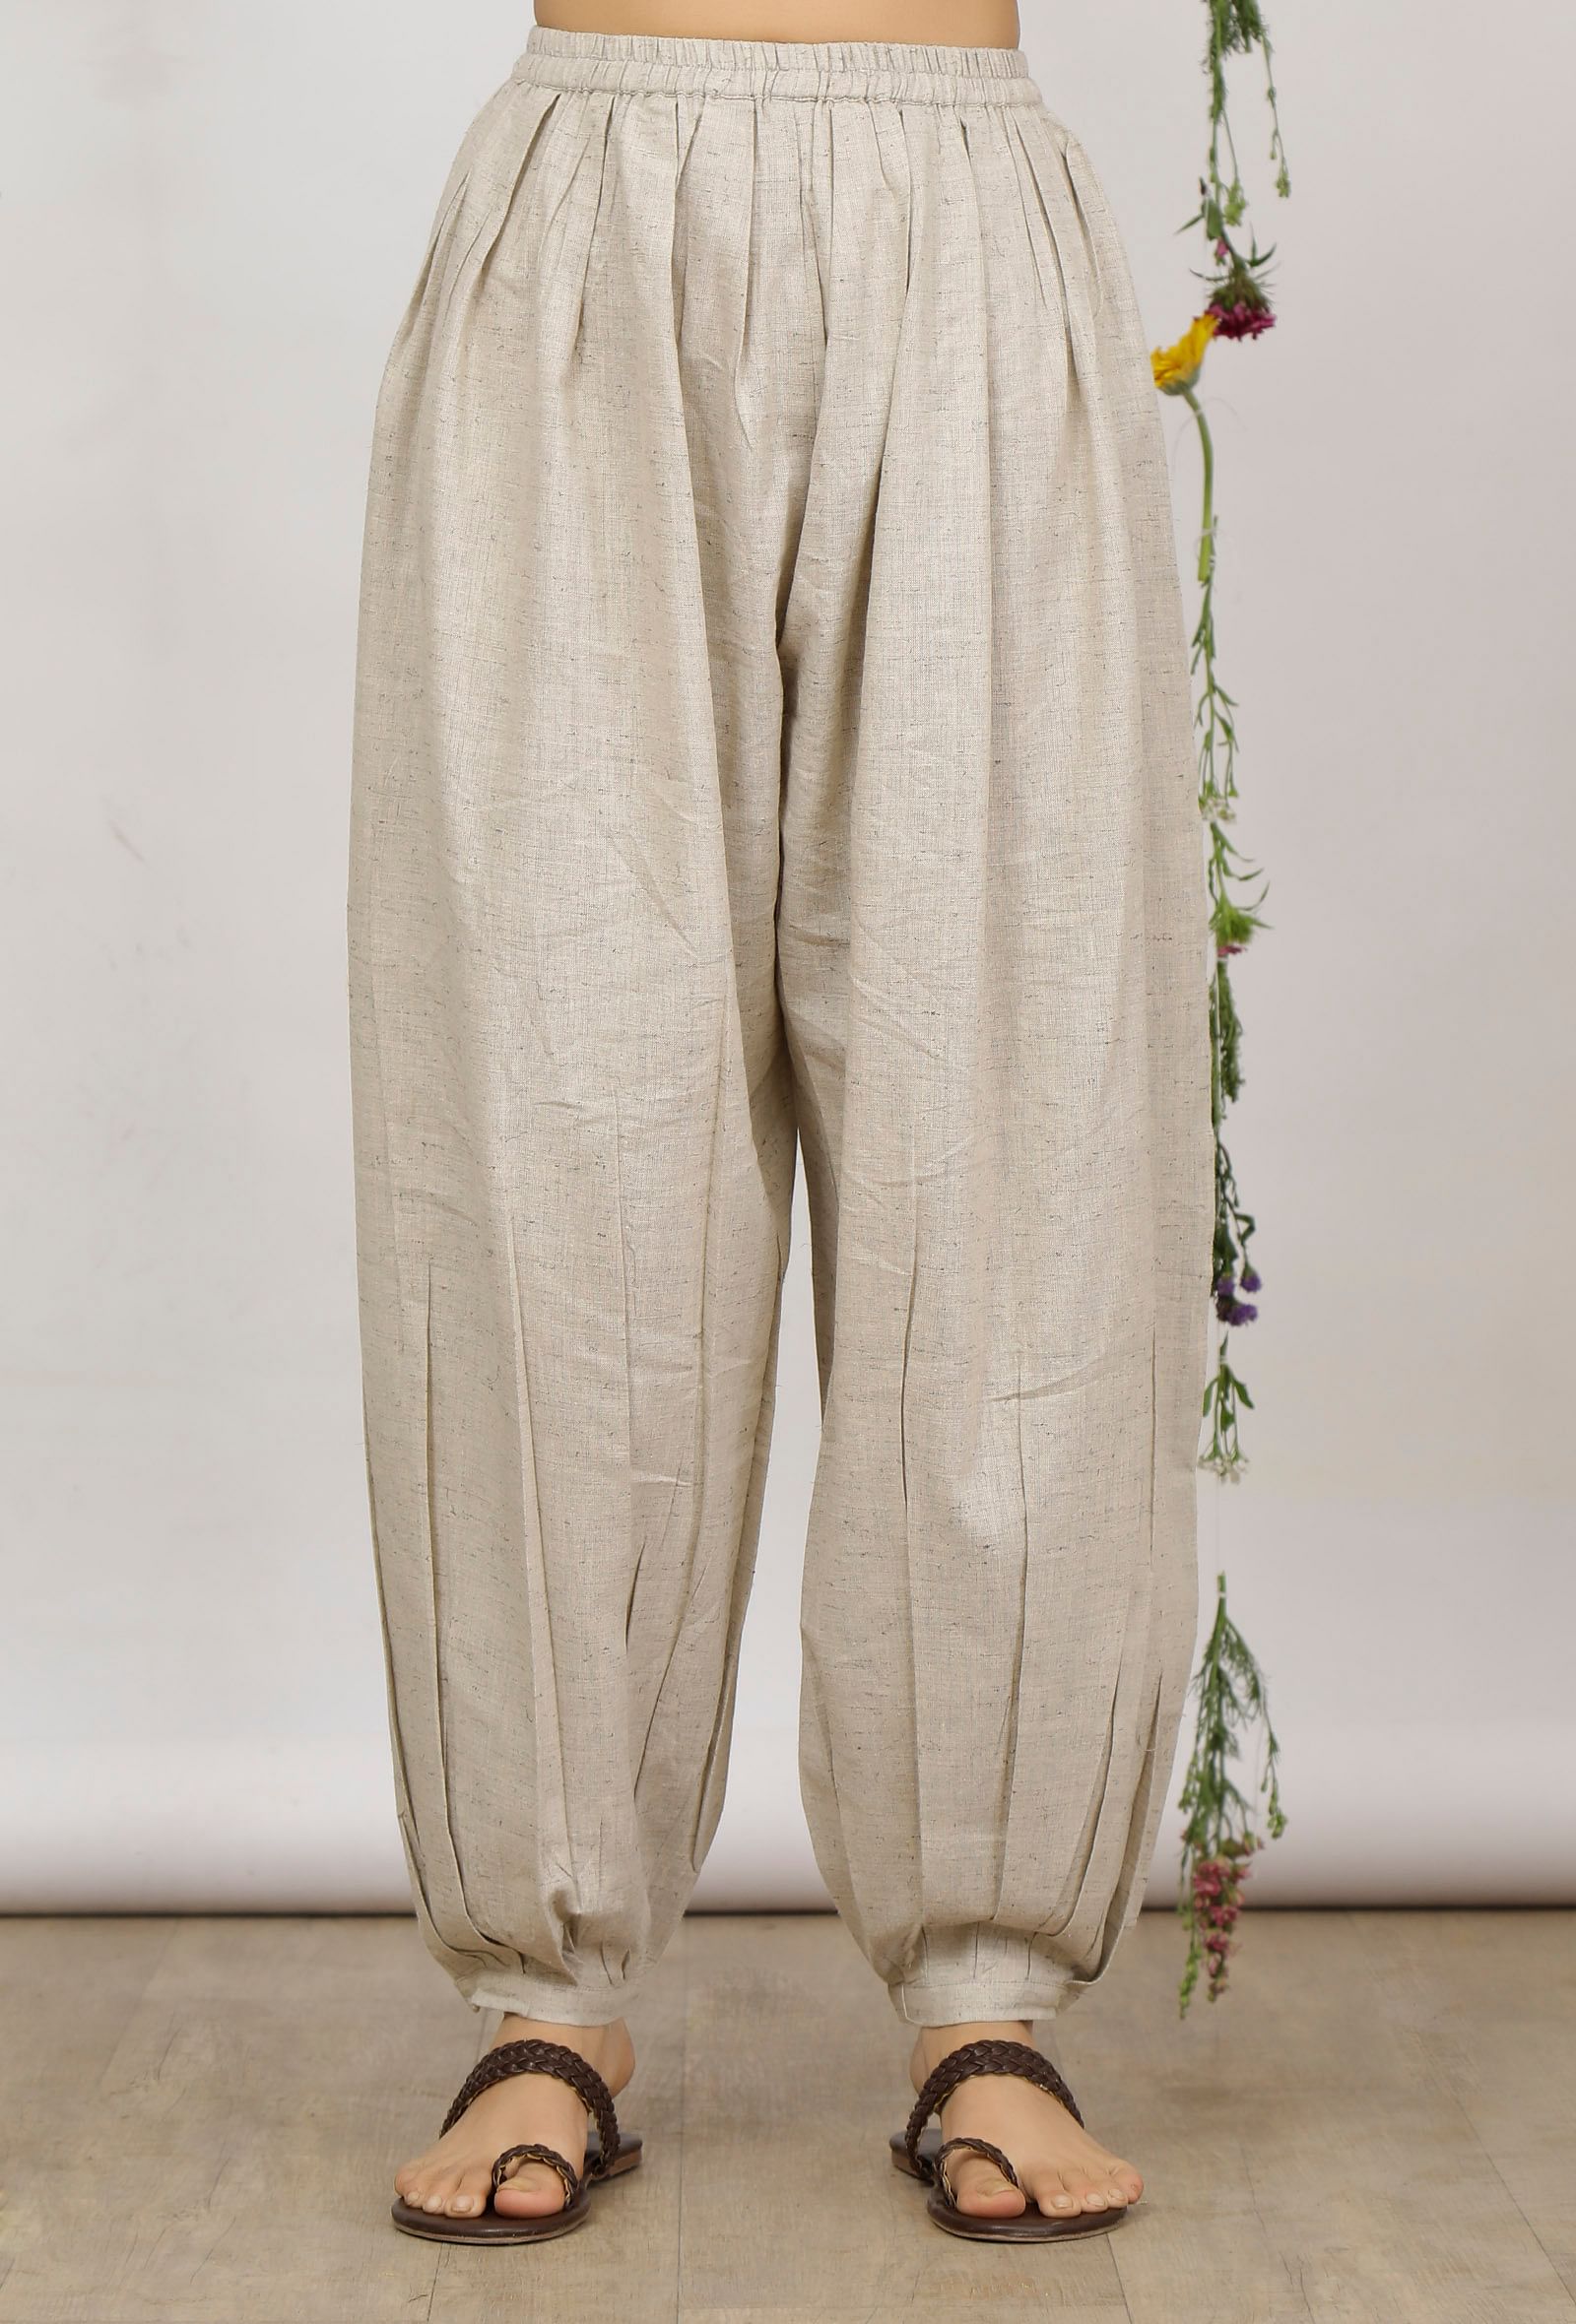 Buy LUZZO Mens Khadi (Cotton) Pant (30, White) at Amazon.in